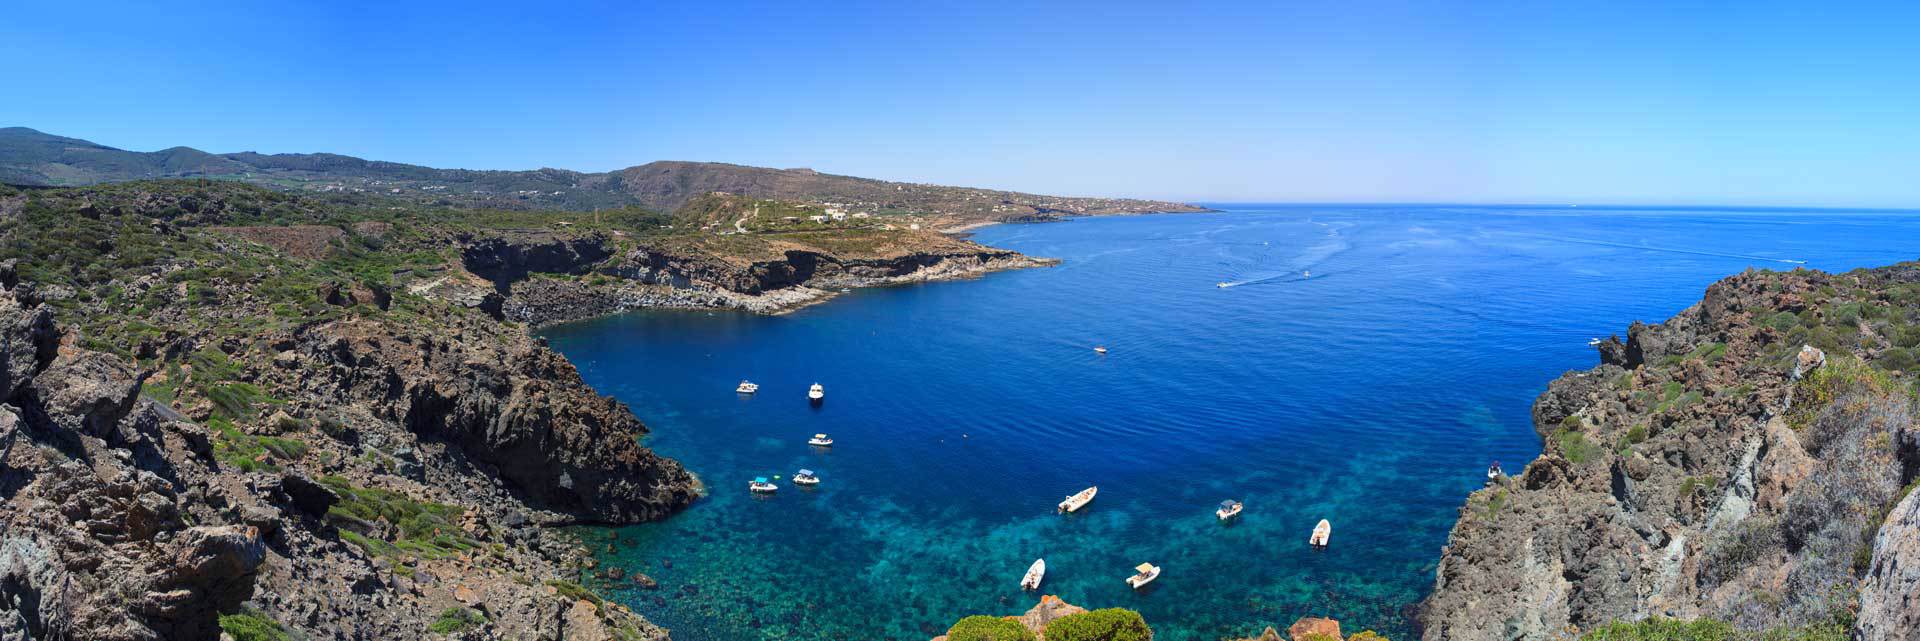 Pantelleria.